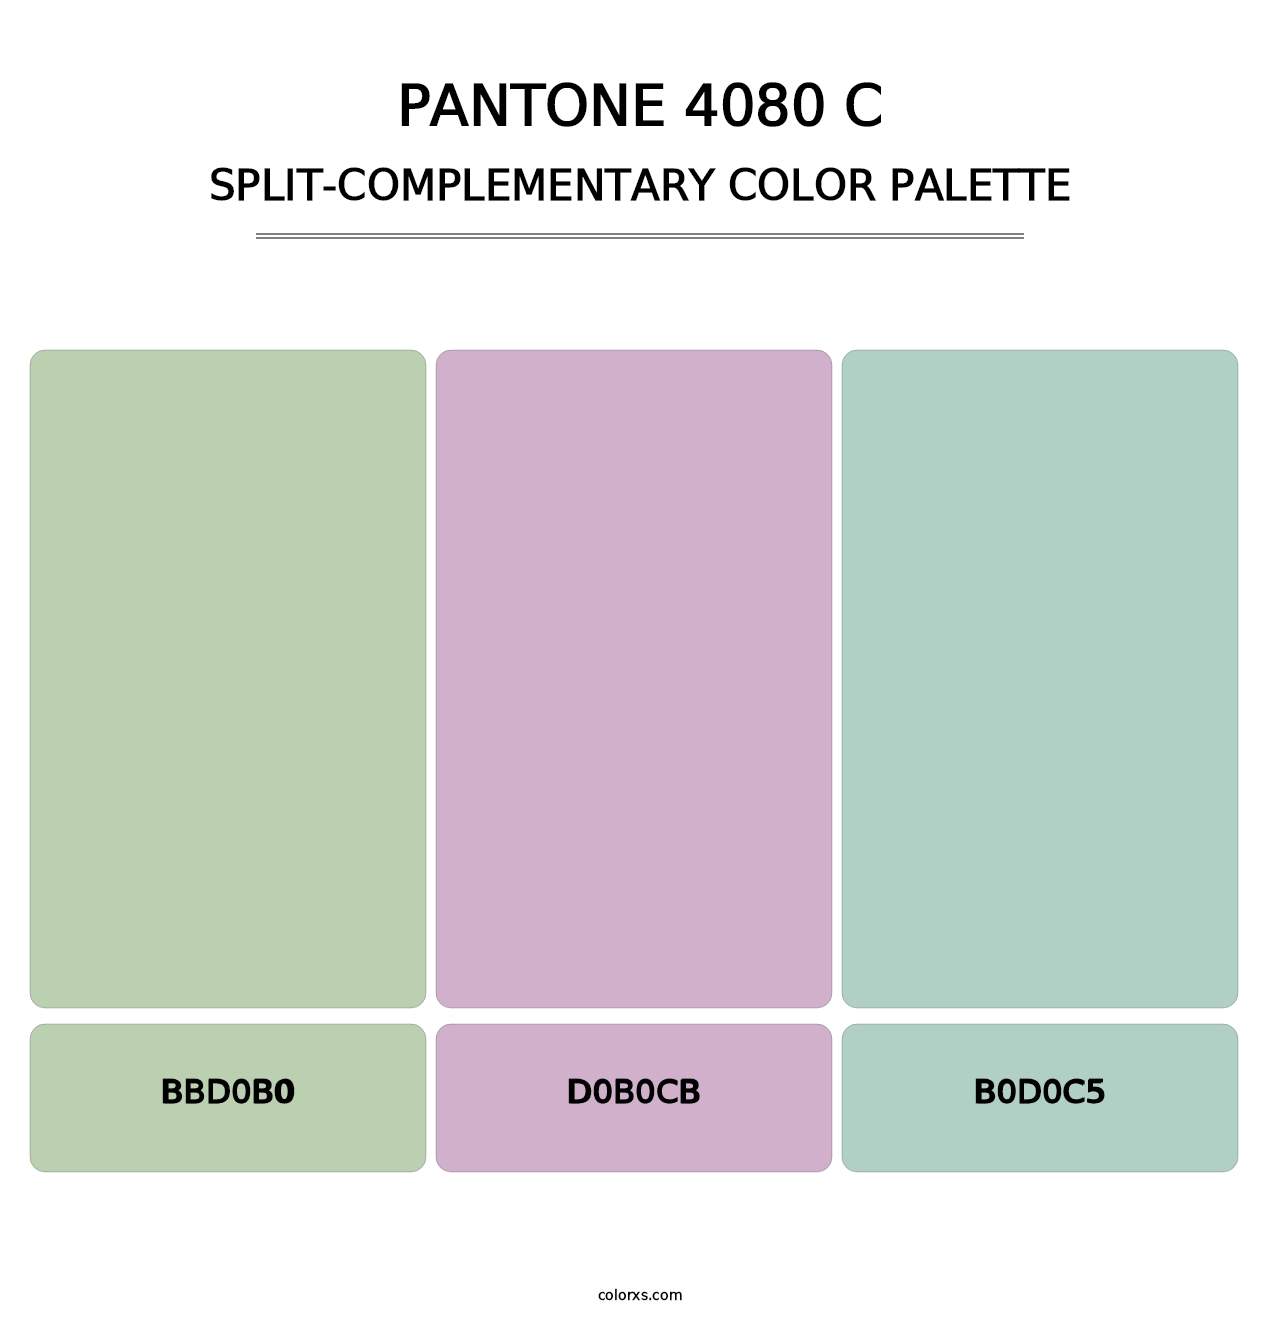 PANTONE 4080 C - Split-Complementary Color Palette